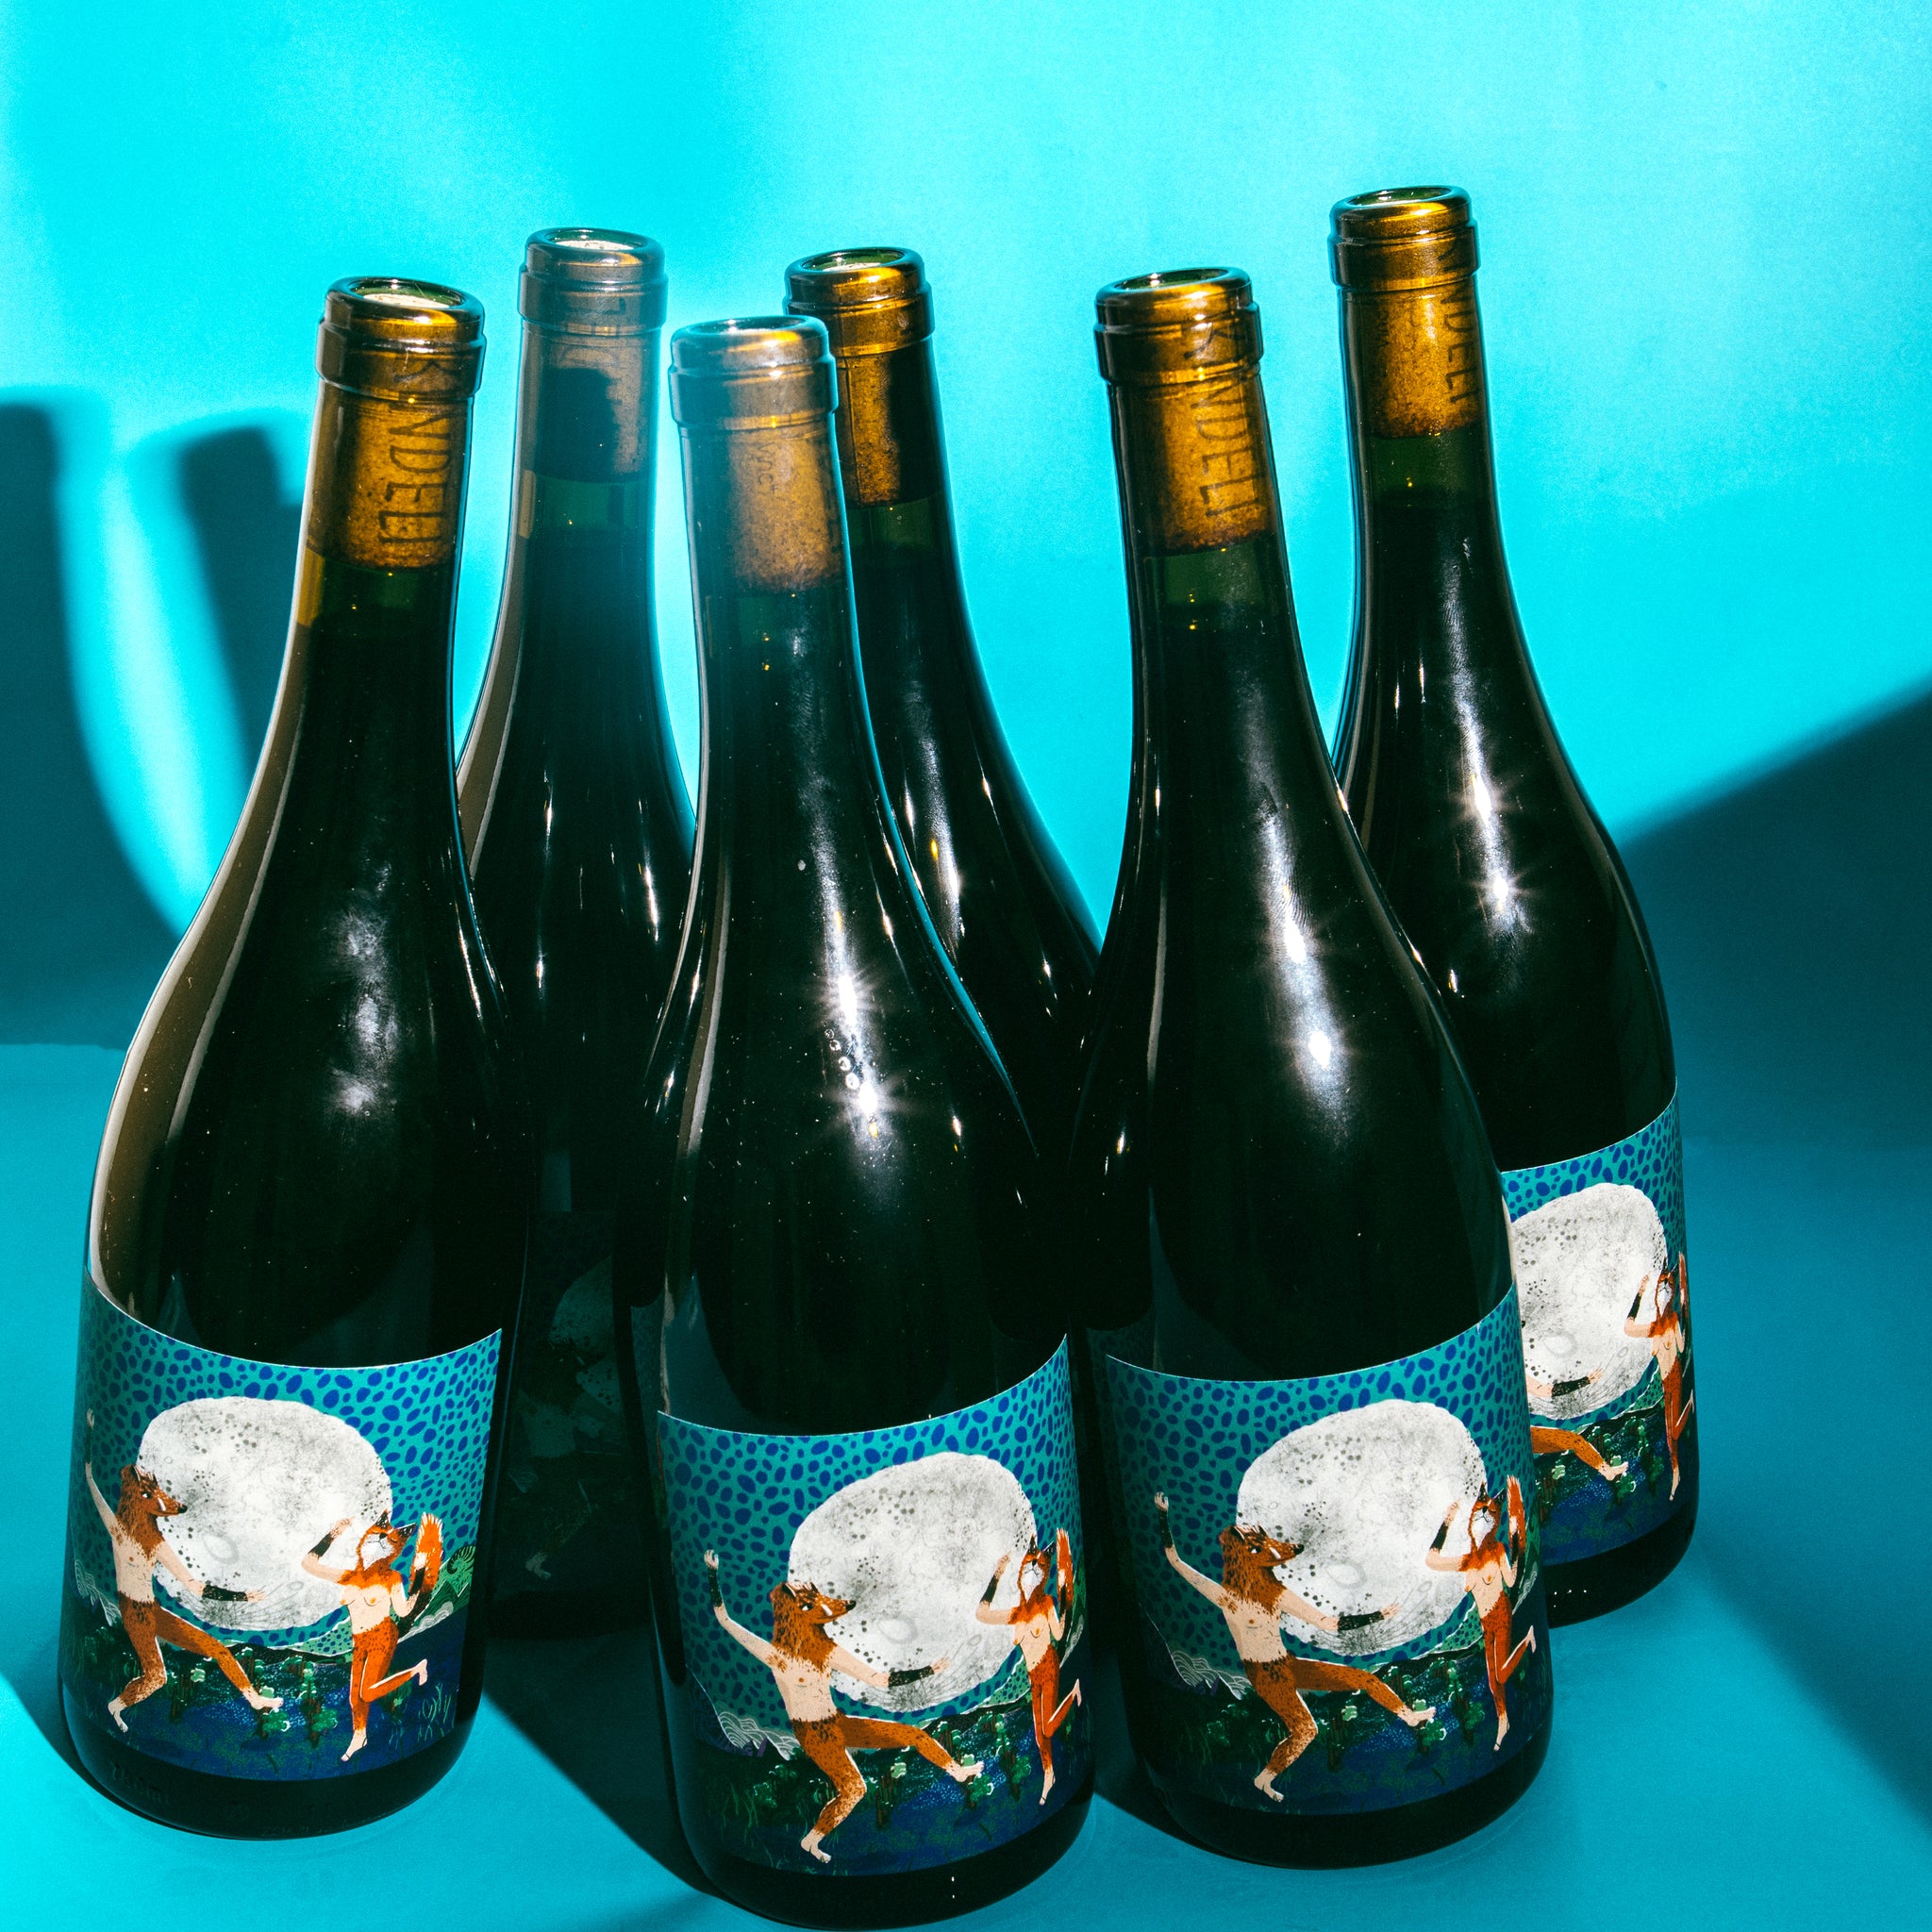 Kindeli Wines 6 or 12 Bottle Gifting Bundle